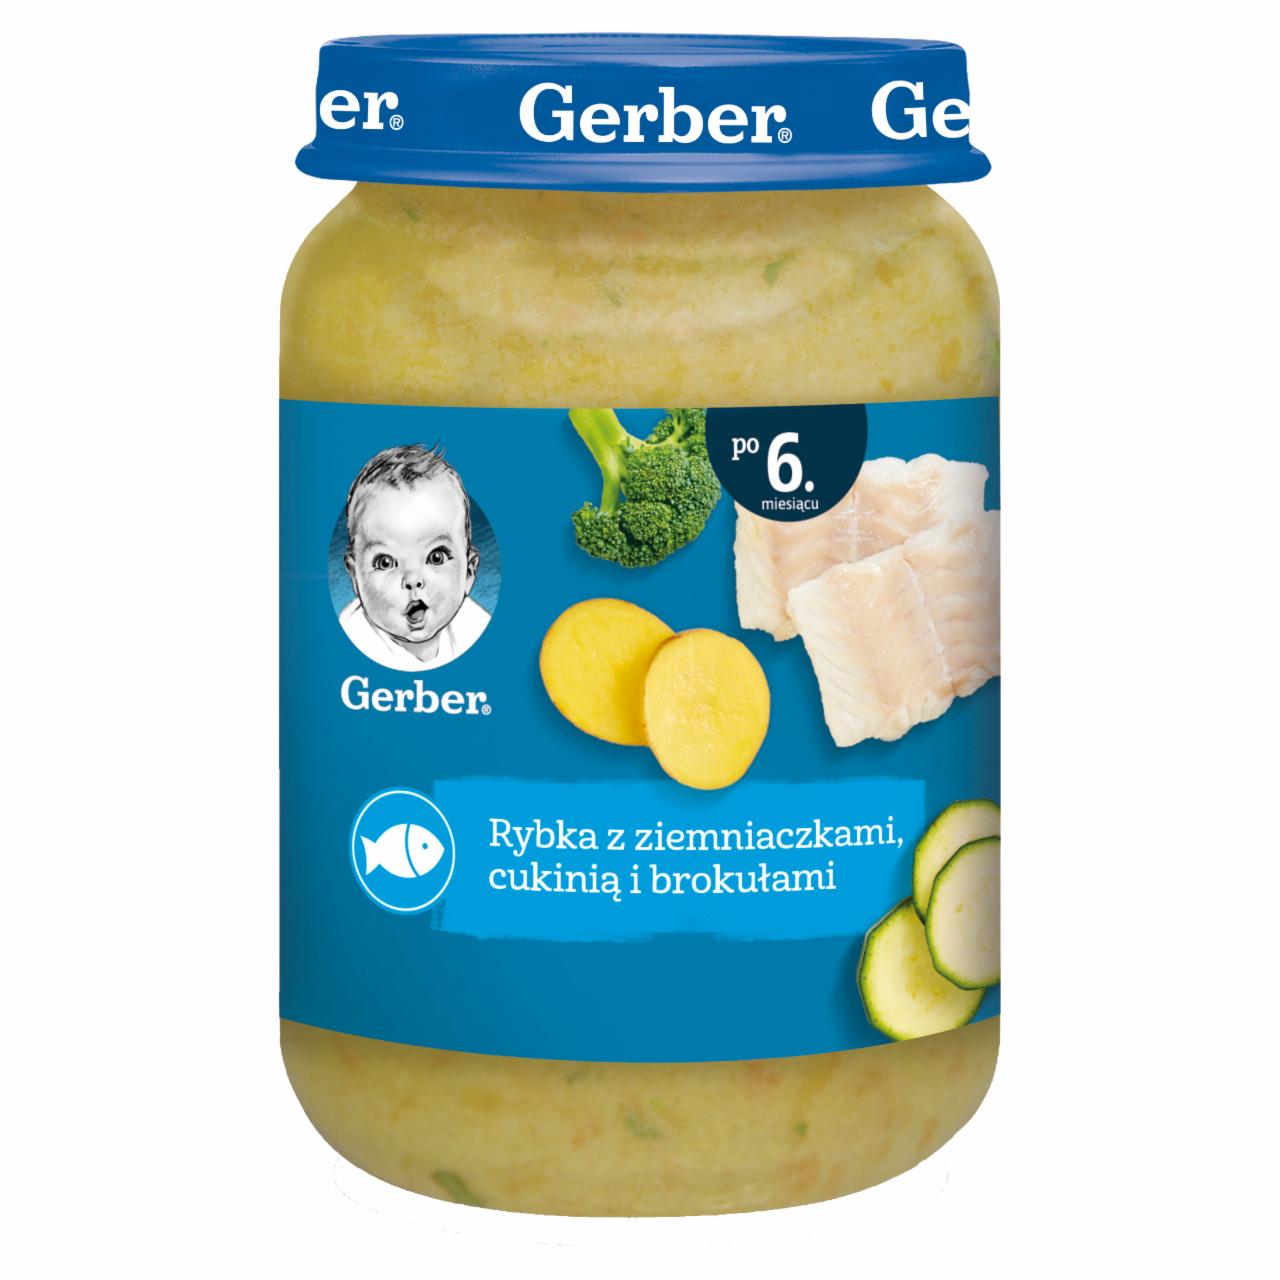 Zdjęcia - Gerber Rybka z ziemniaczkami cukinią i brokułami dla niemowląt po 6. miesiącu 190 g